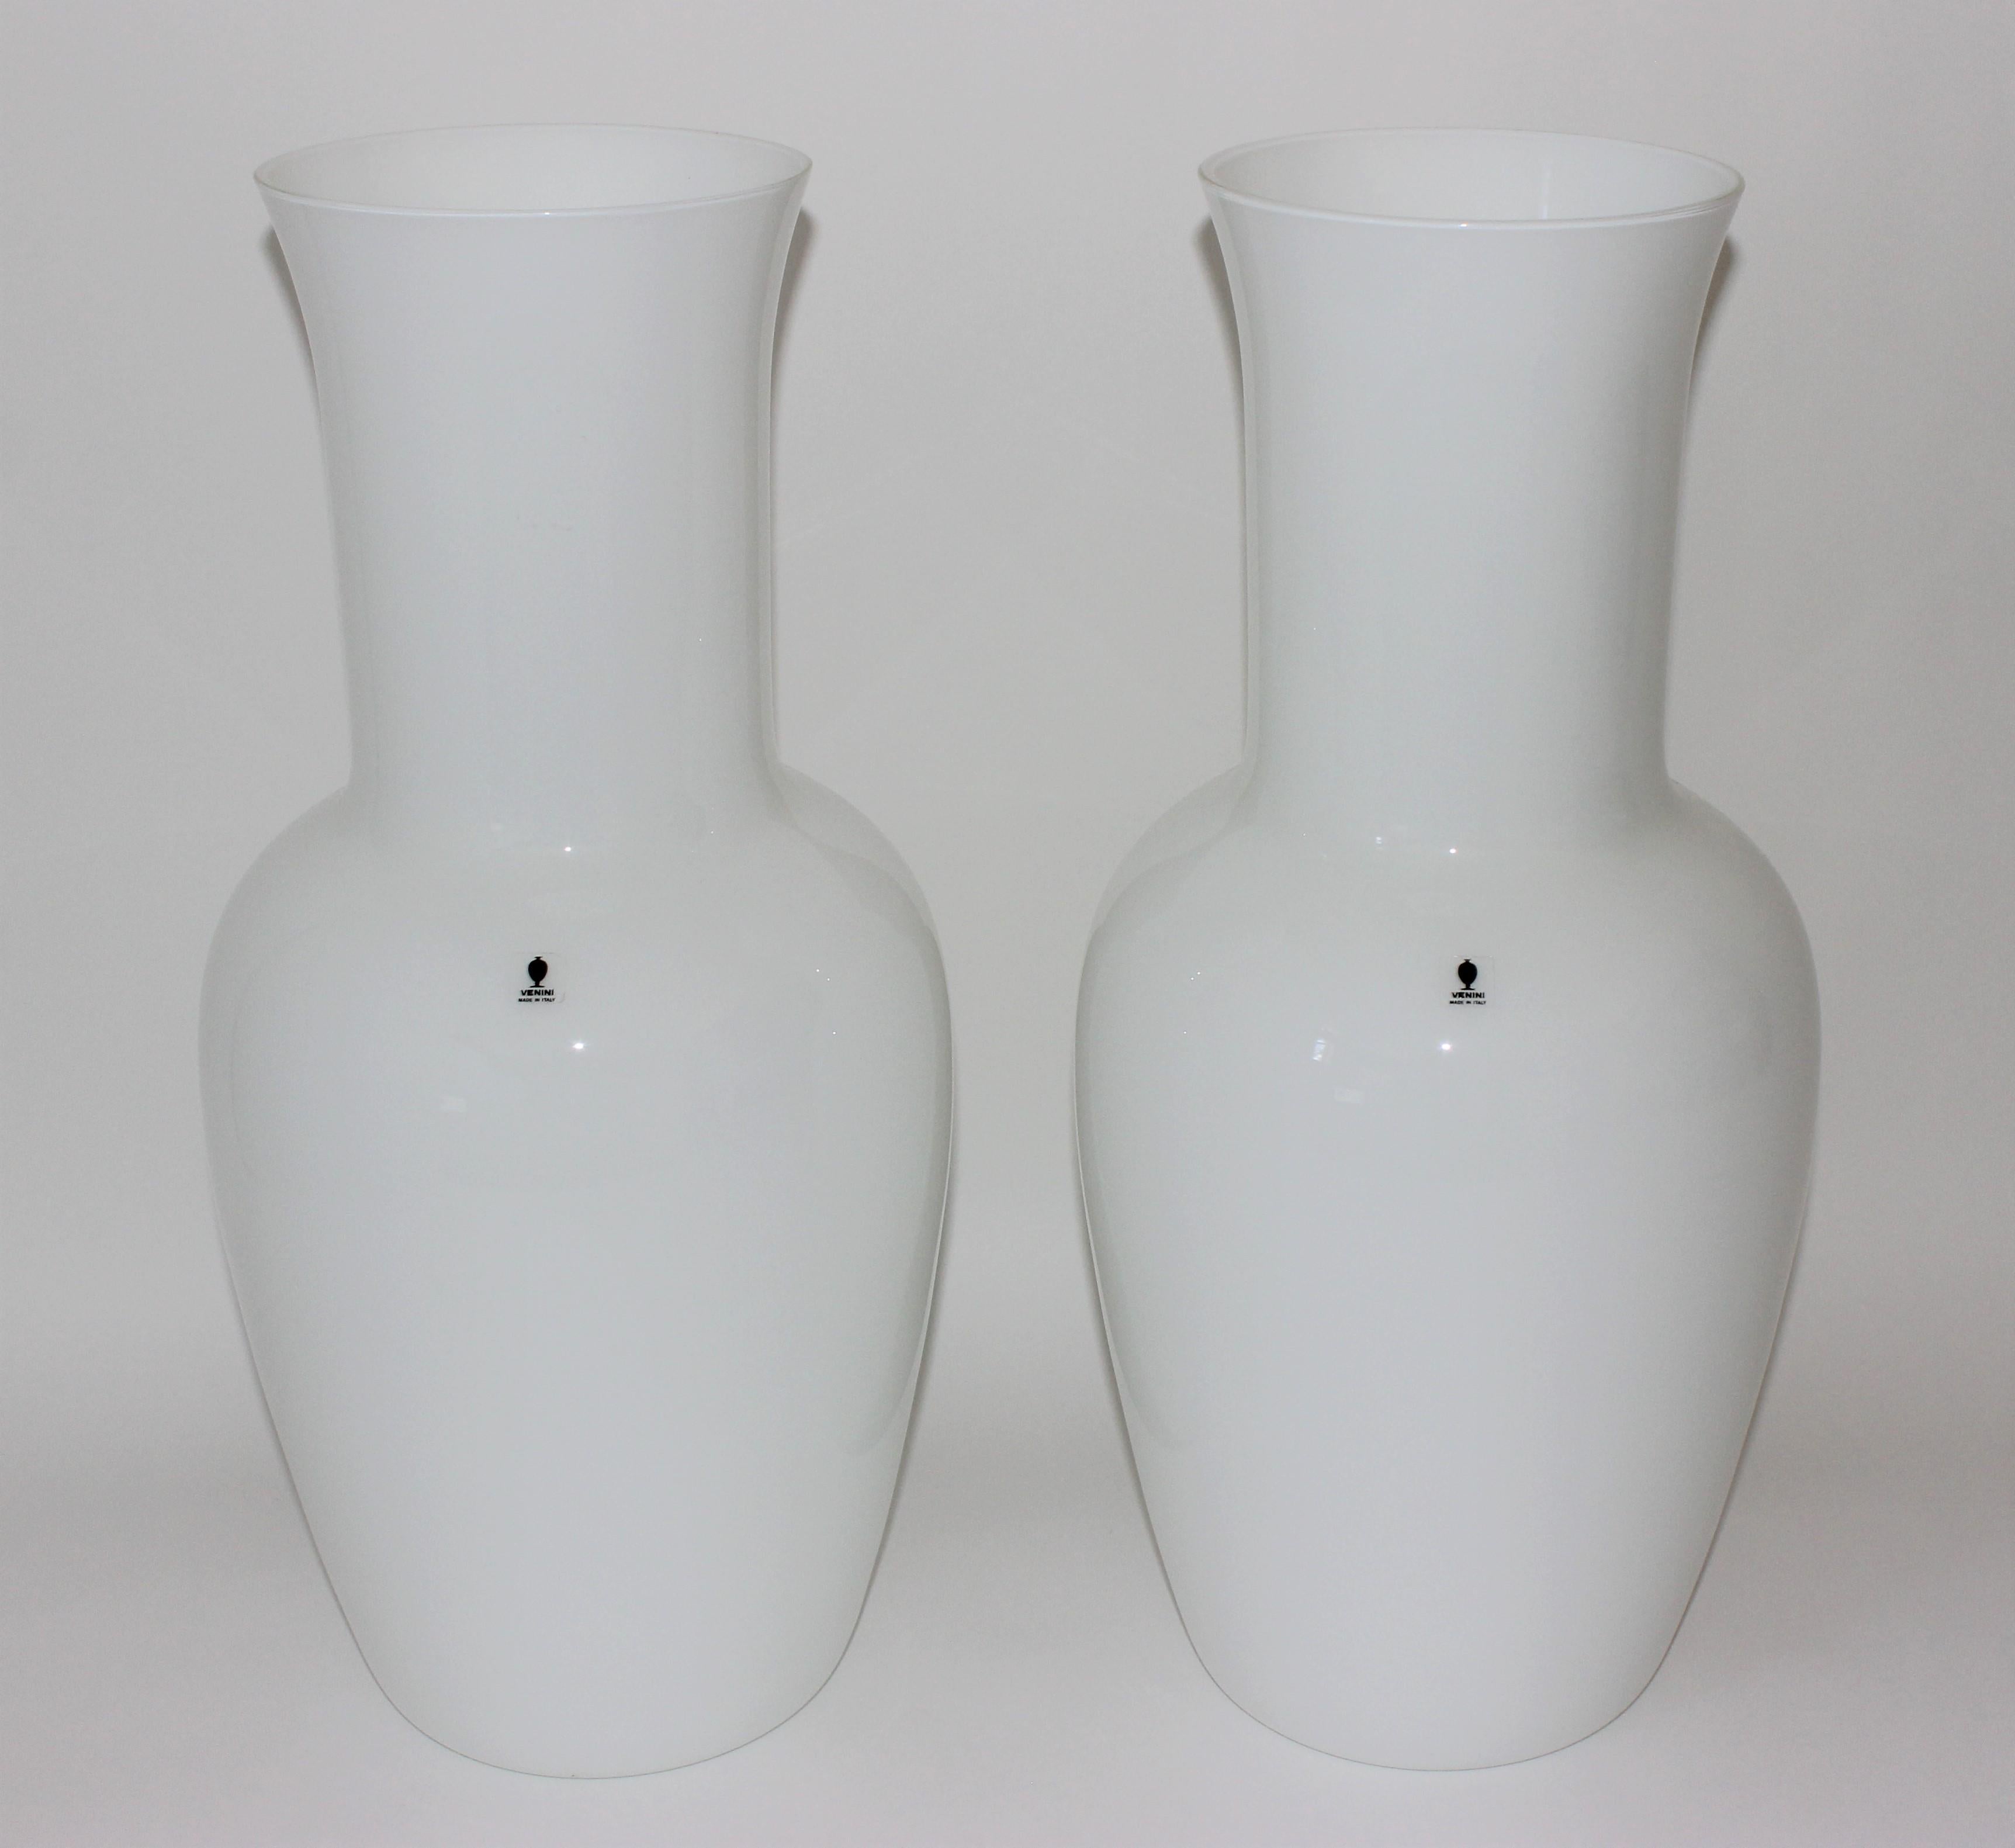 Cet ensemble élégant de grands vases en verre de Murano de Venini date des années 1980 et conserve ses étiquettes d'origine.